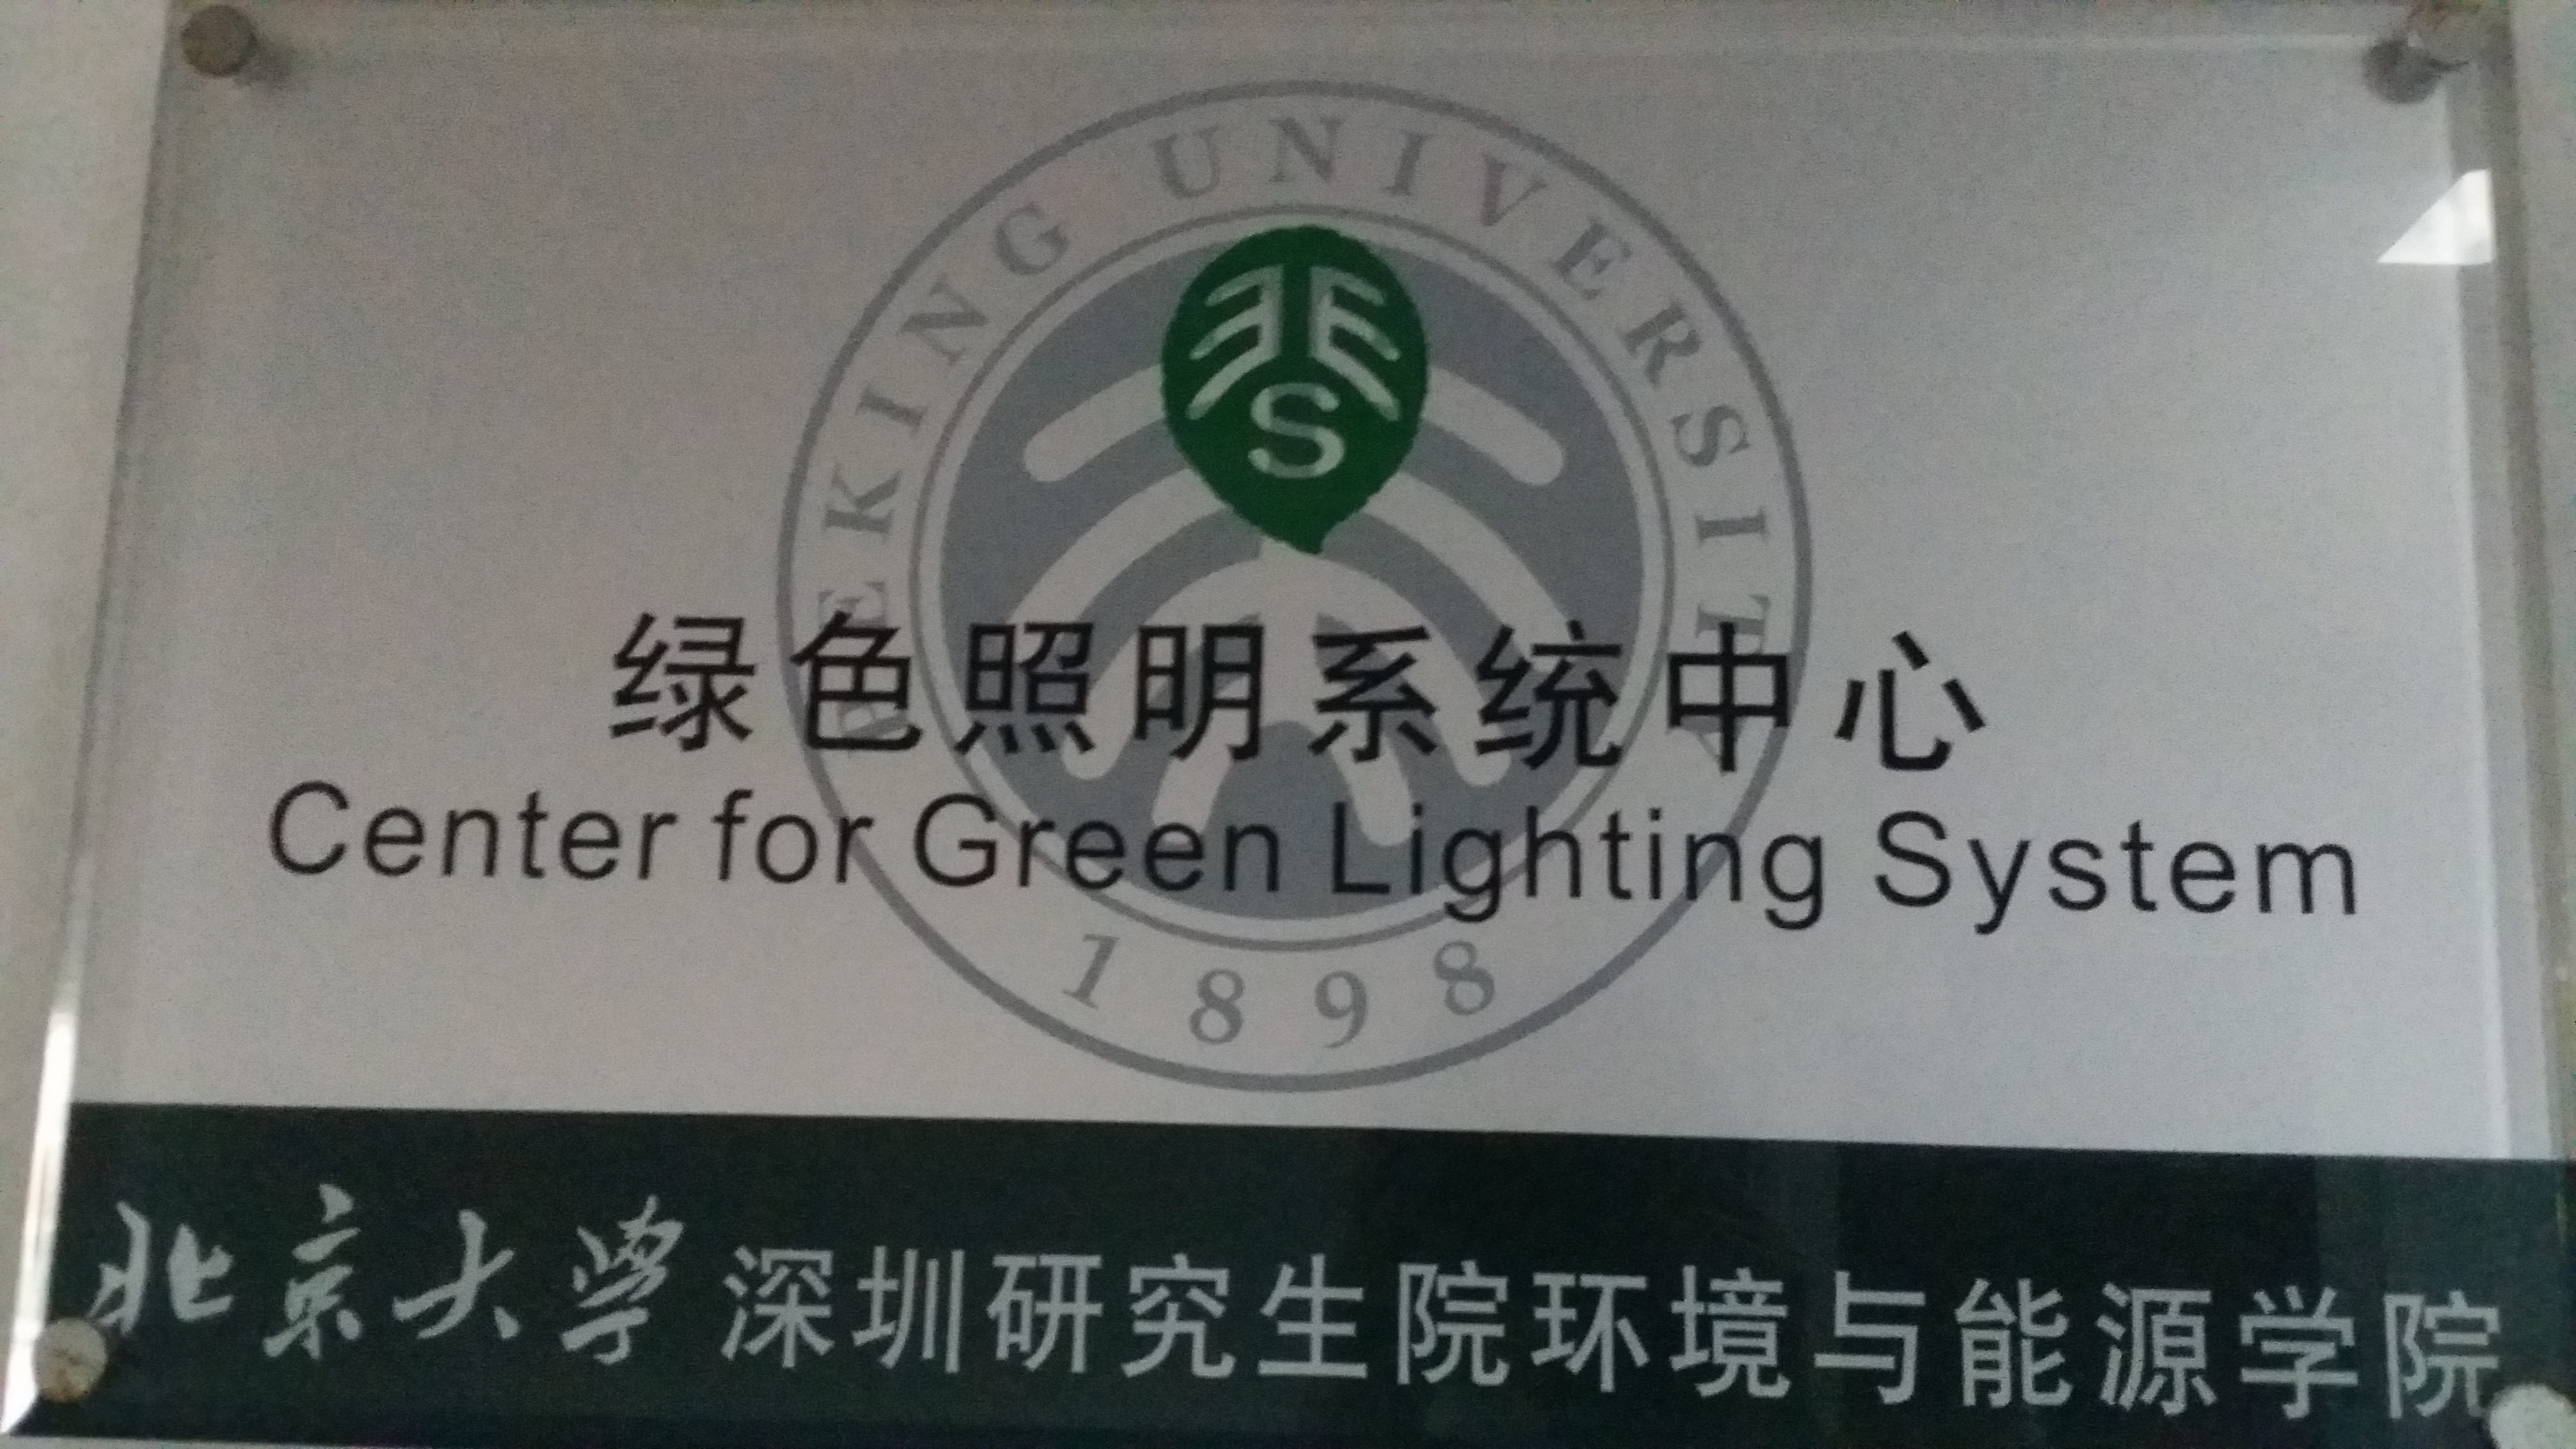 北京大學-加州大學綠色照明系統實驗室